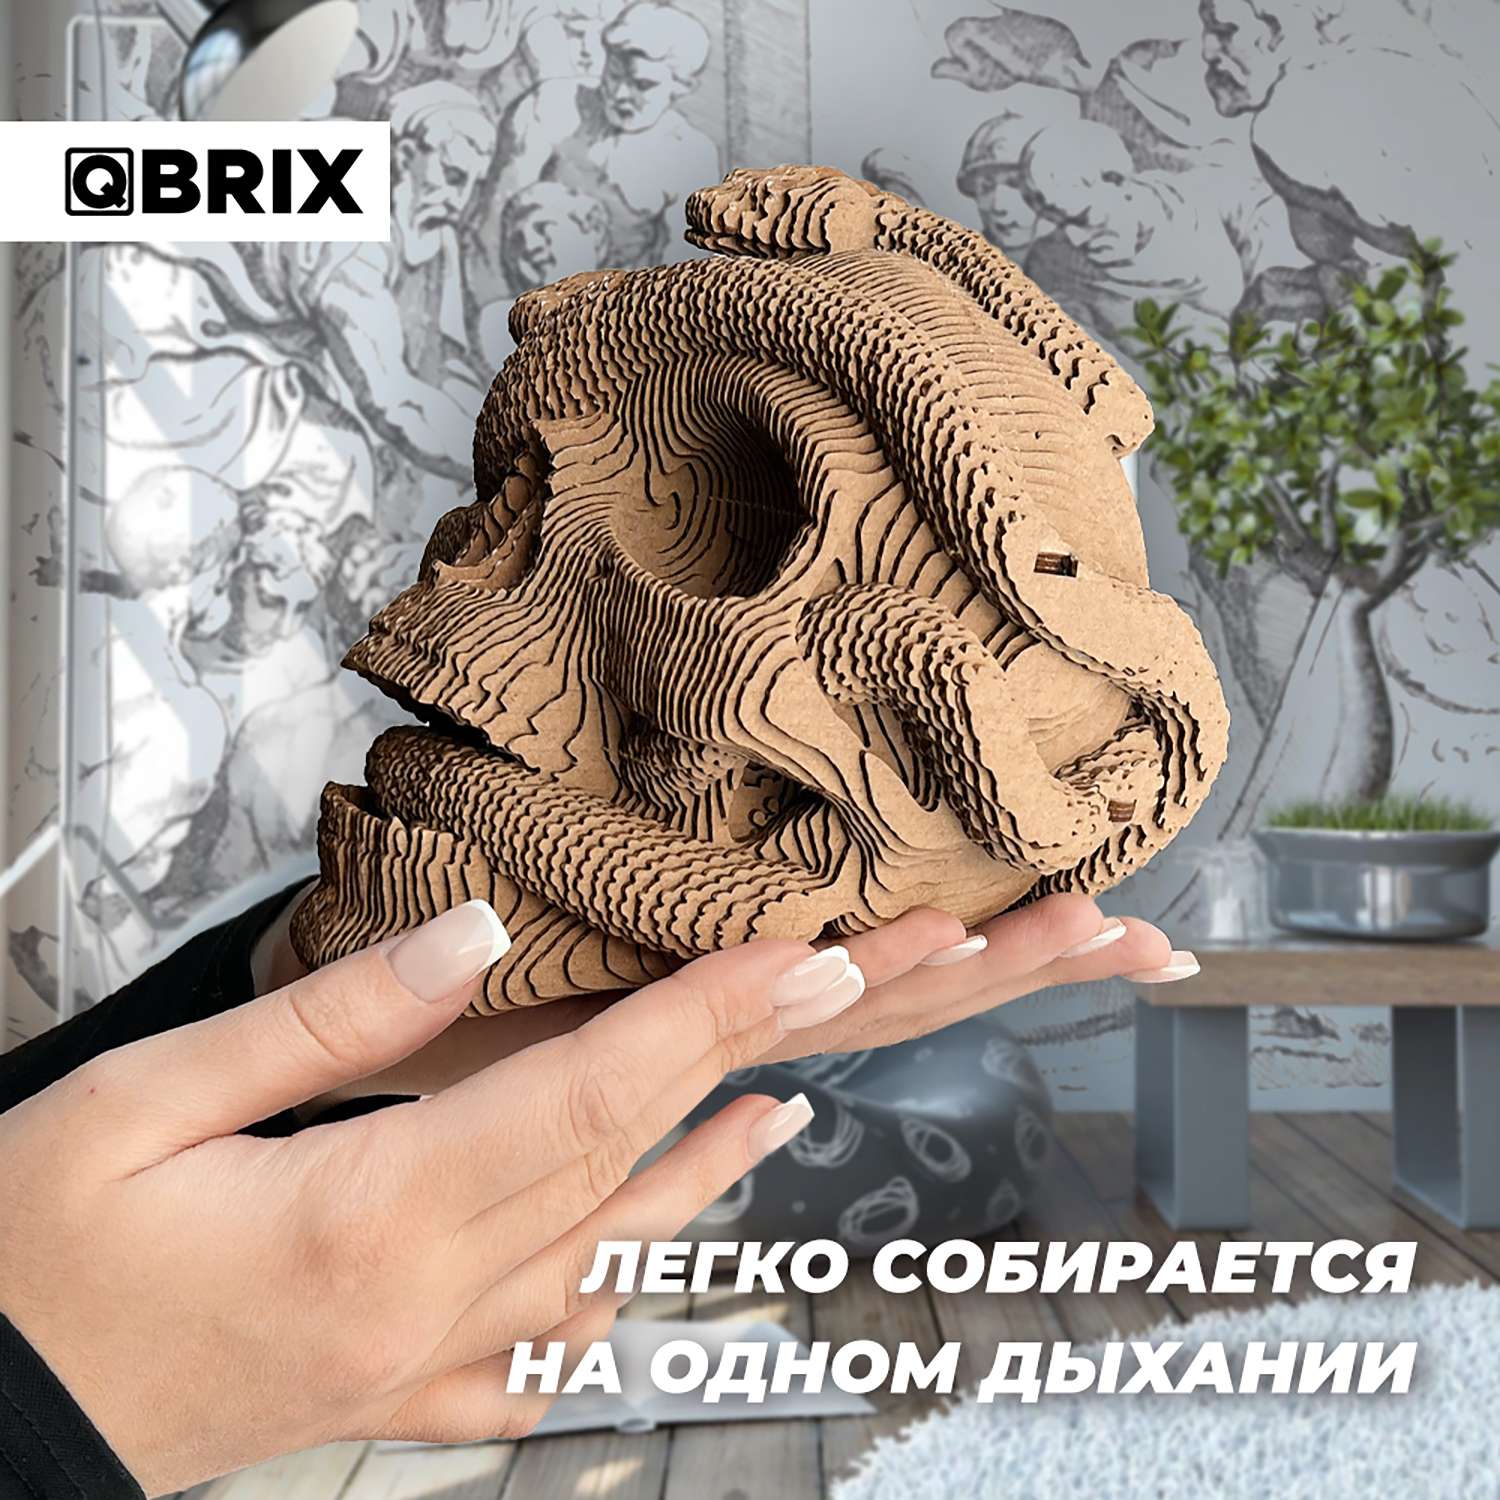 Конструктор QBRIX 3D картонный Одиссея 20020 20020 - фото 5